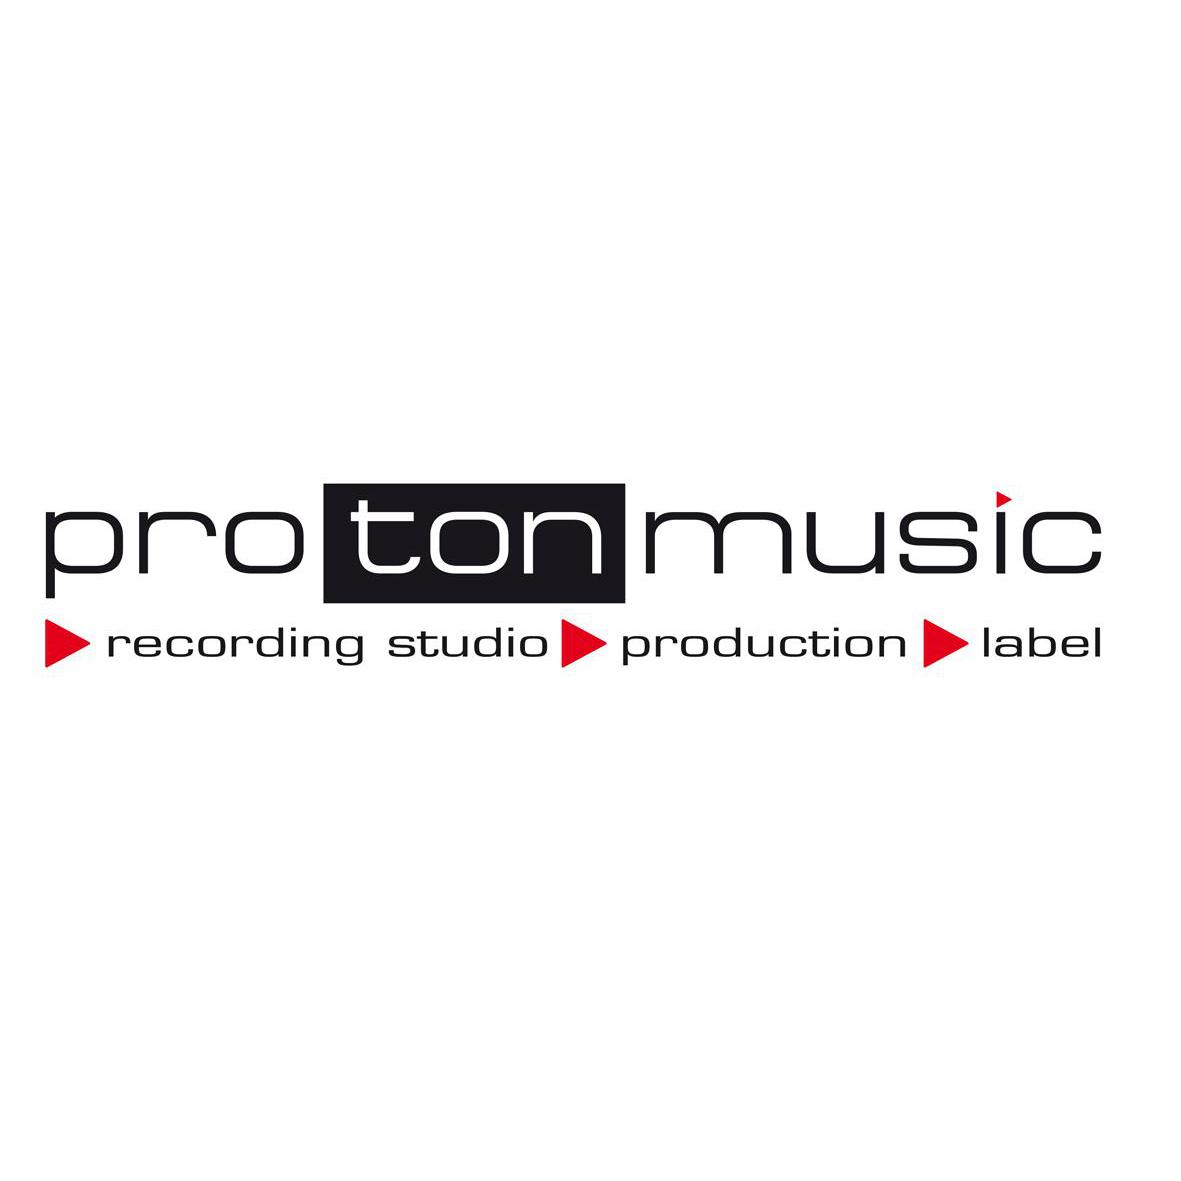 pro ton music / Frank Schultz music in Neuenburg am Rhein - Logo